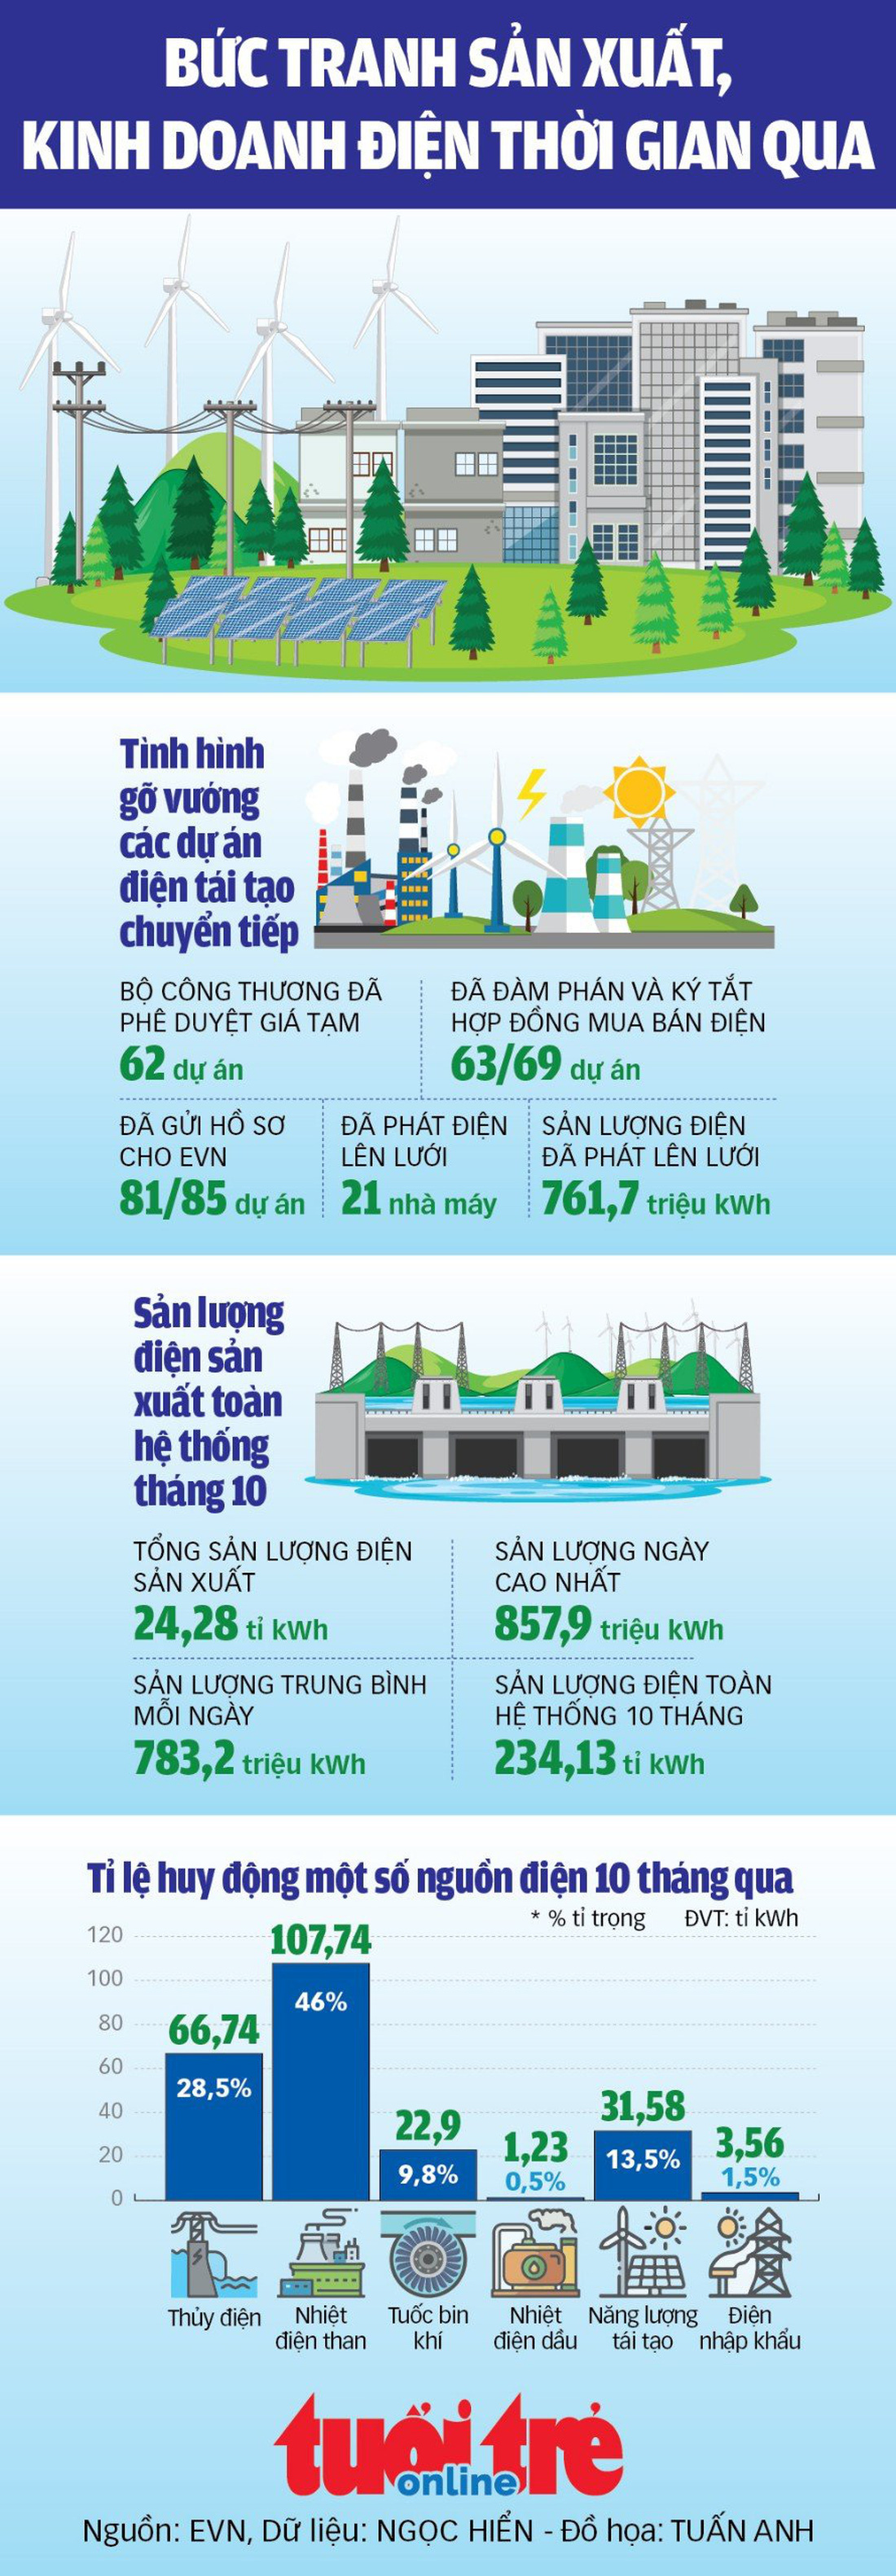 Trước khi tăng giá, bức tranh sản xuất kinh doanh điện của Việt Nam như thế nào? - Ảnh 1.